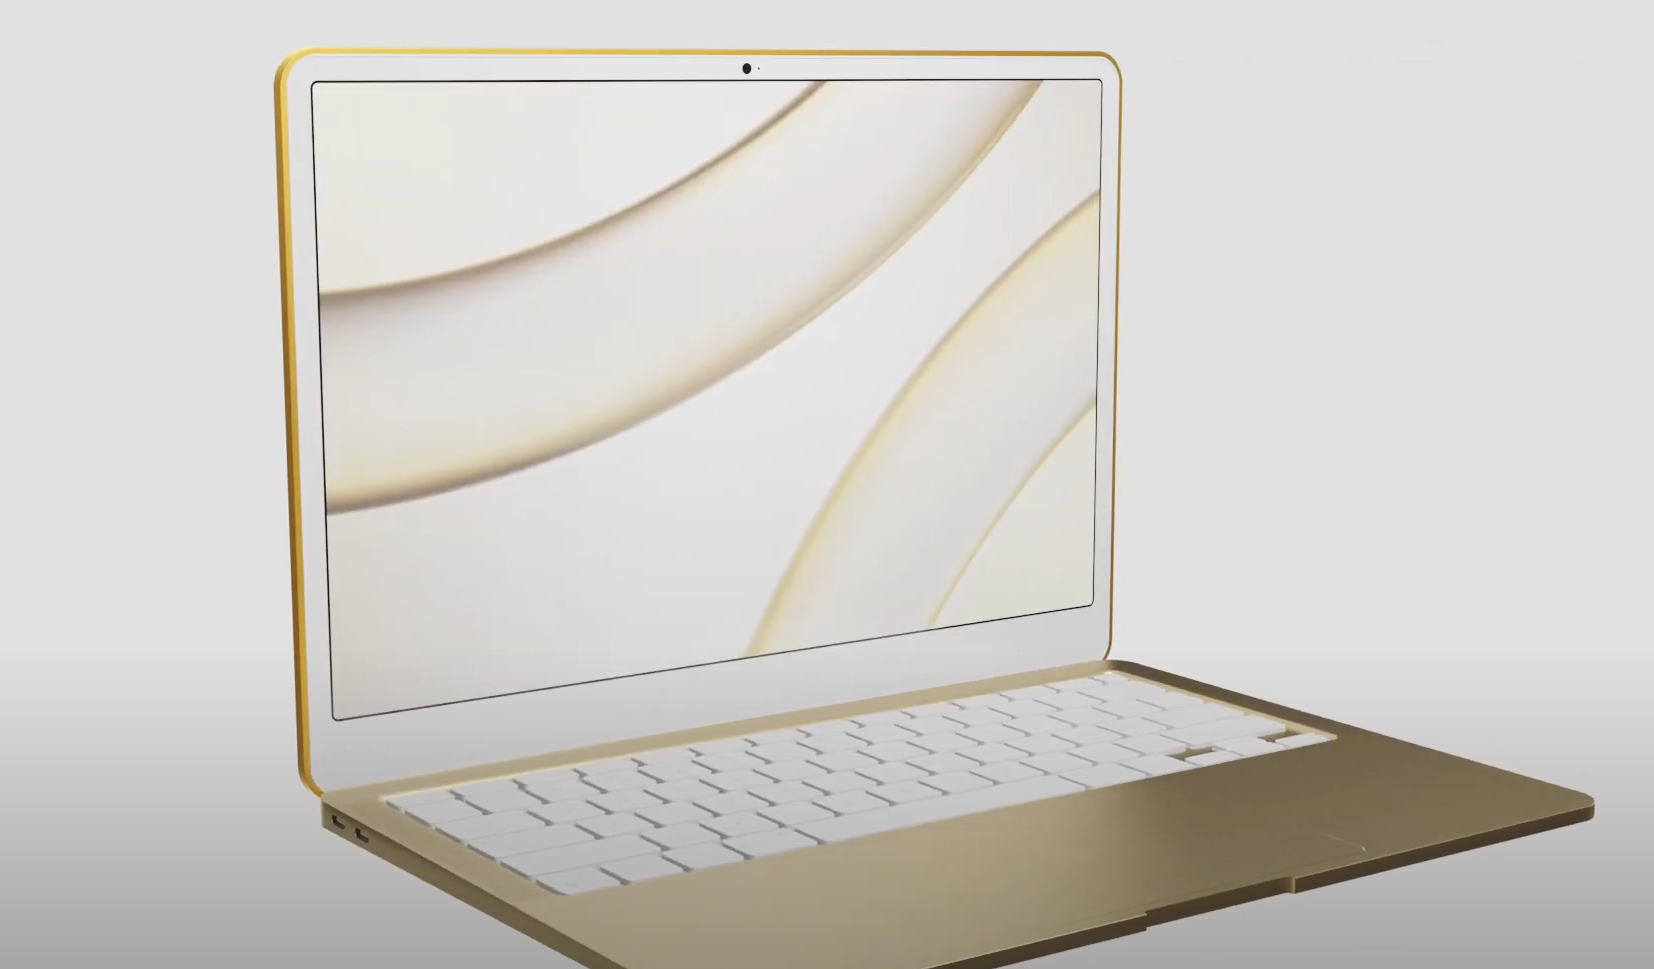 Namanya mungkin saja "MacBook" - diluncurkan pada musim panas 2022 1